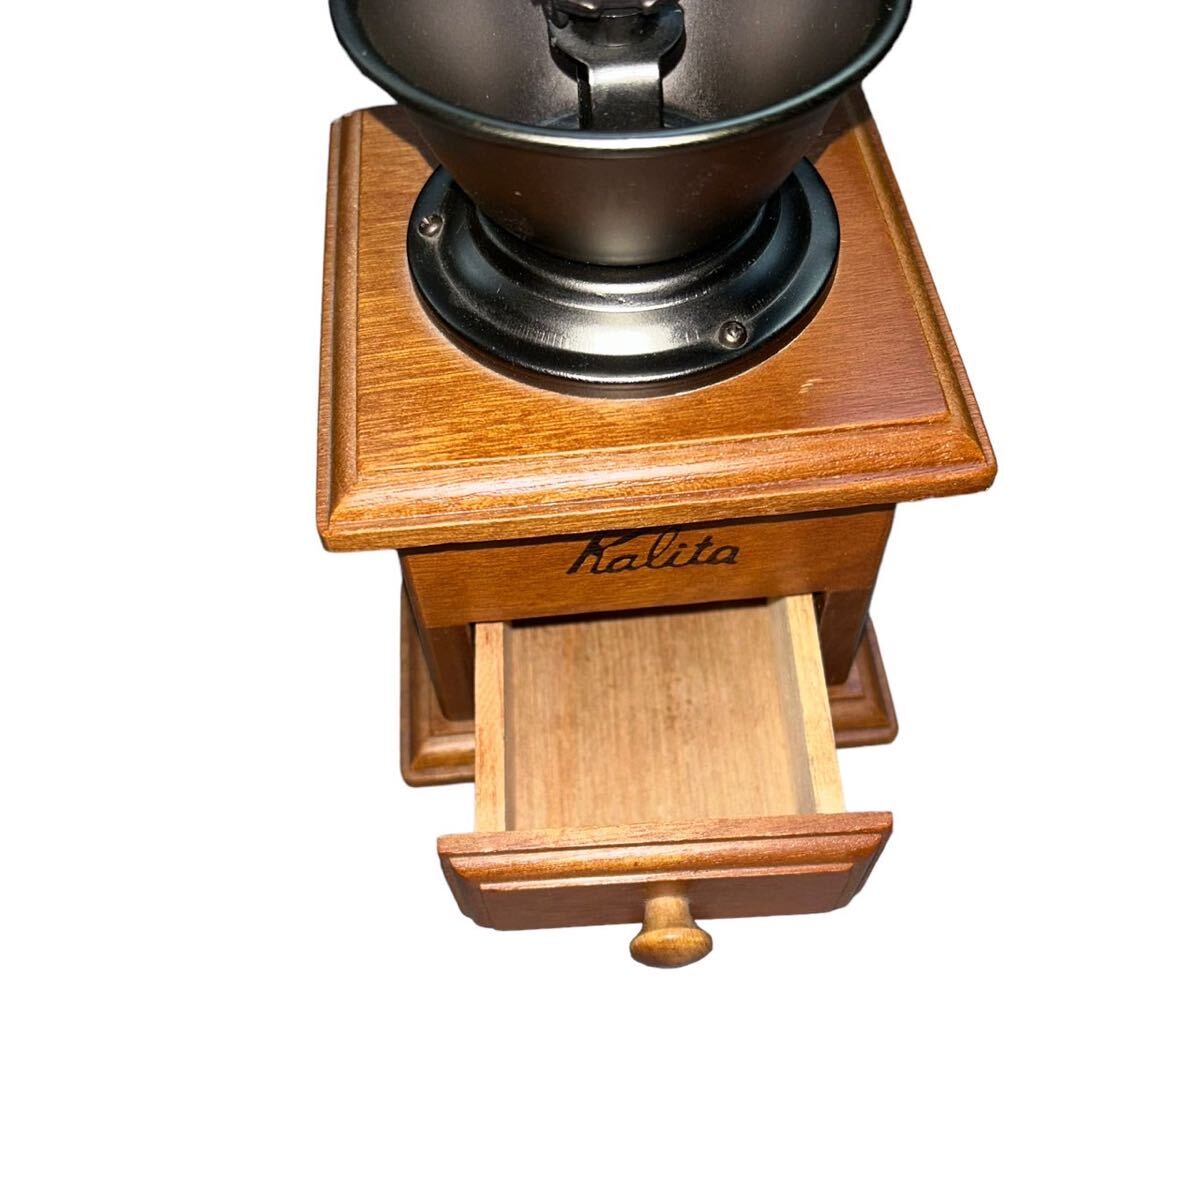 [gi0412-43] Carita кофемолка из дерева ручное управление античный работоспособность не проверялась кофемолка из дерева Carita ручное управление ручной .. рука ..